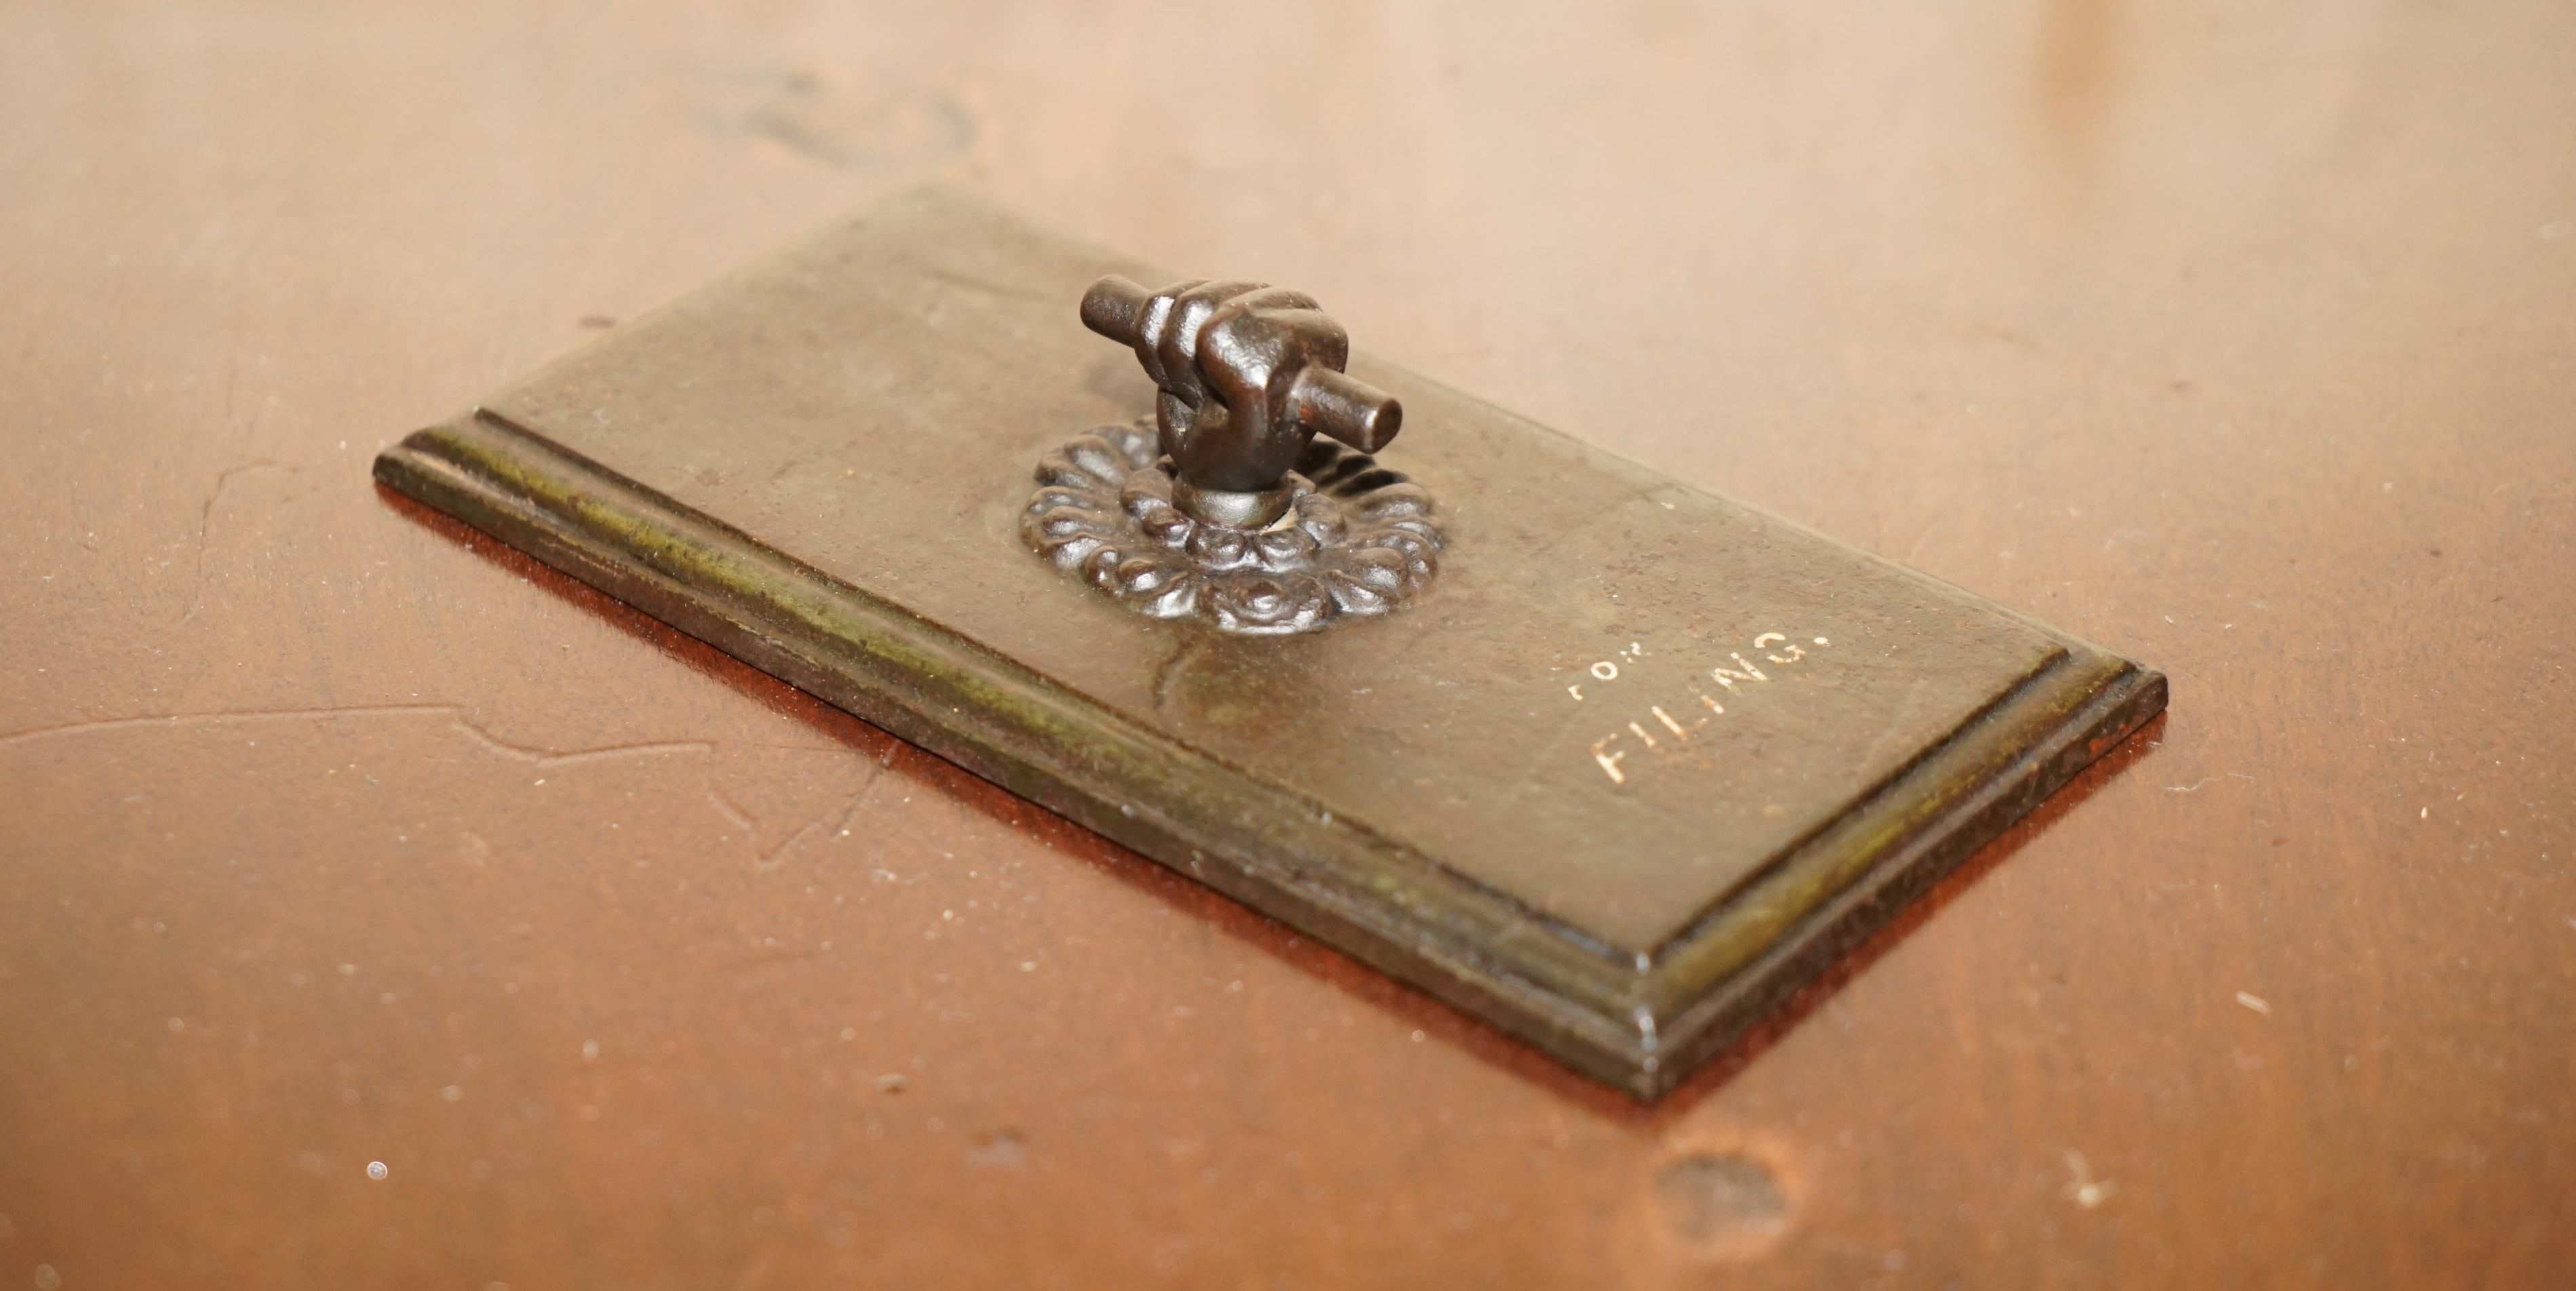 Wir freuen uns, diesen absolut exquisiten Original-Briefbeschwerer aus viktorianischer Bronze von A. Kenrick & Son mit geballter Faust zum Verkauf anbieten zu können. 

Ein wirklich atemberaubendes Stück viktorianischen Schreibtisch Kunst, diese